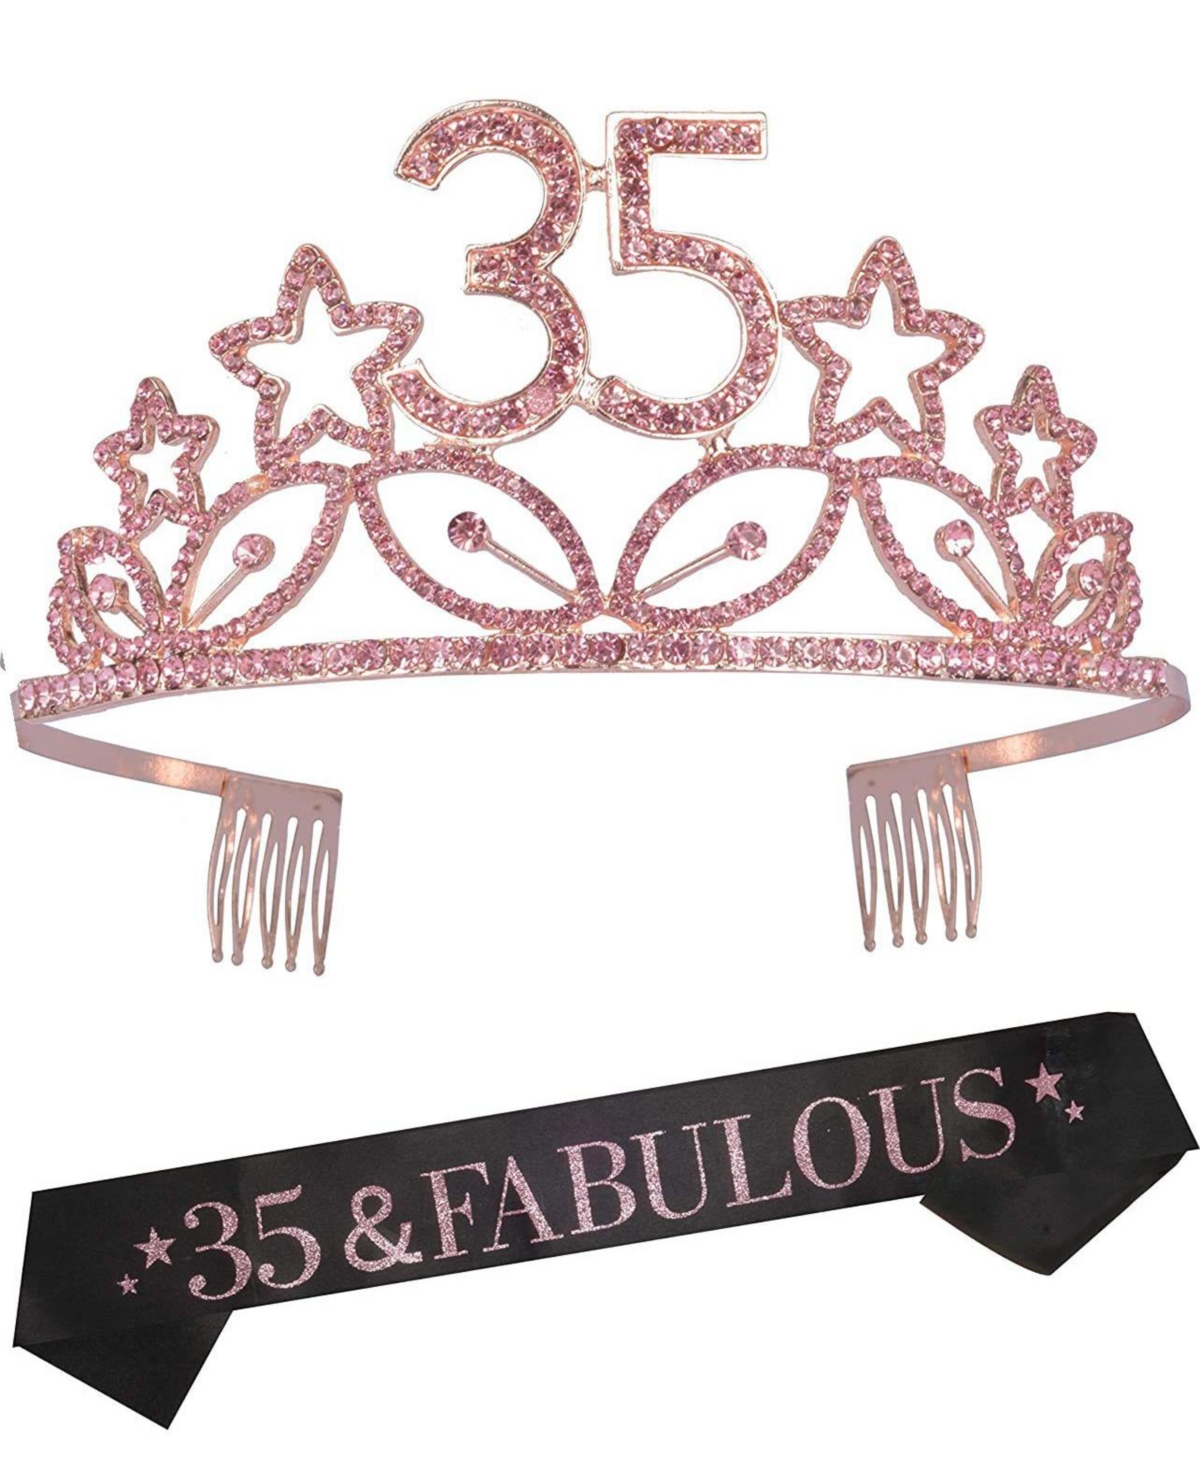 35th Birthday Sash and Tiara for Women - Fabulous Glitter Sash + Stars Rhinestone Pink Premium Metal Tiara for Her, 35th Birthday Gifts for